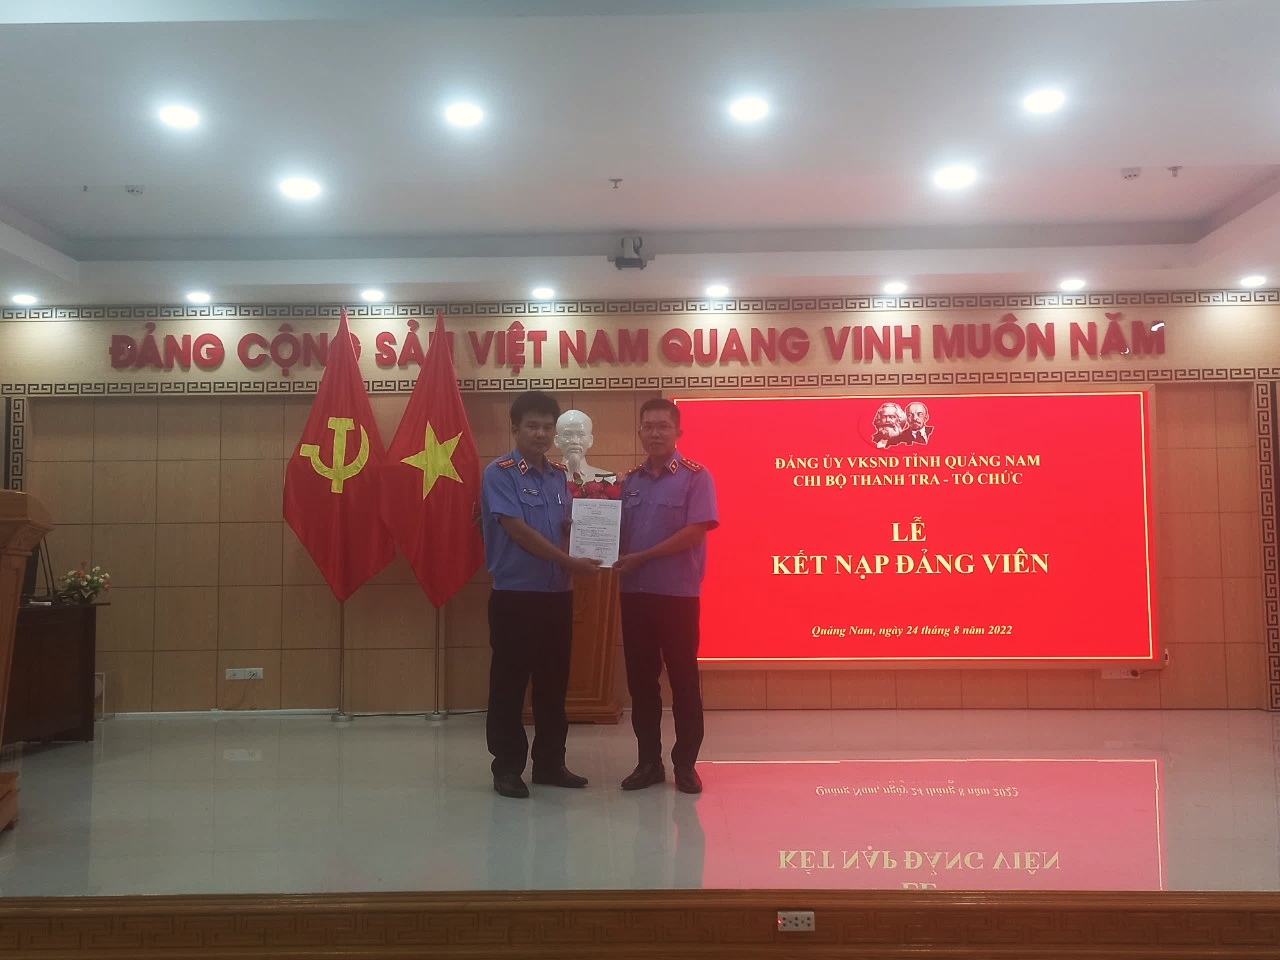 Chi bộ Thanh tra - Tổ chức VKSND tỉnh Quảng Nam tổ chức Lễ kết nạp đảng viên mới